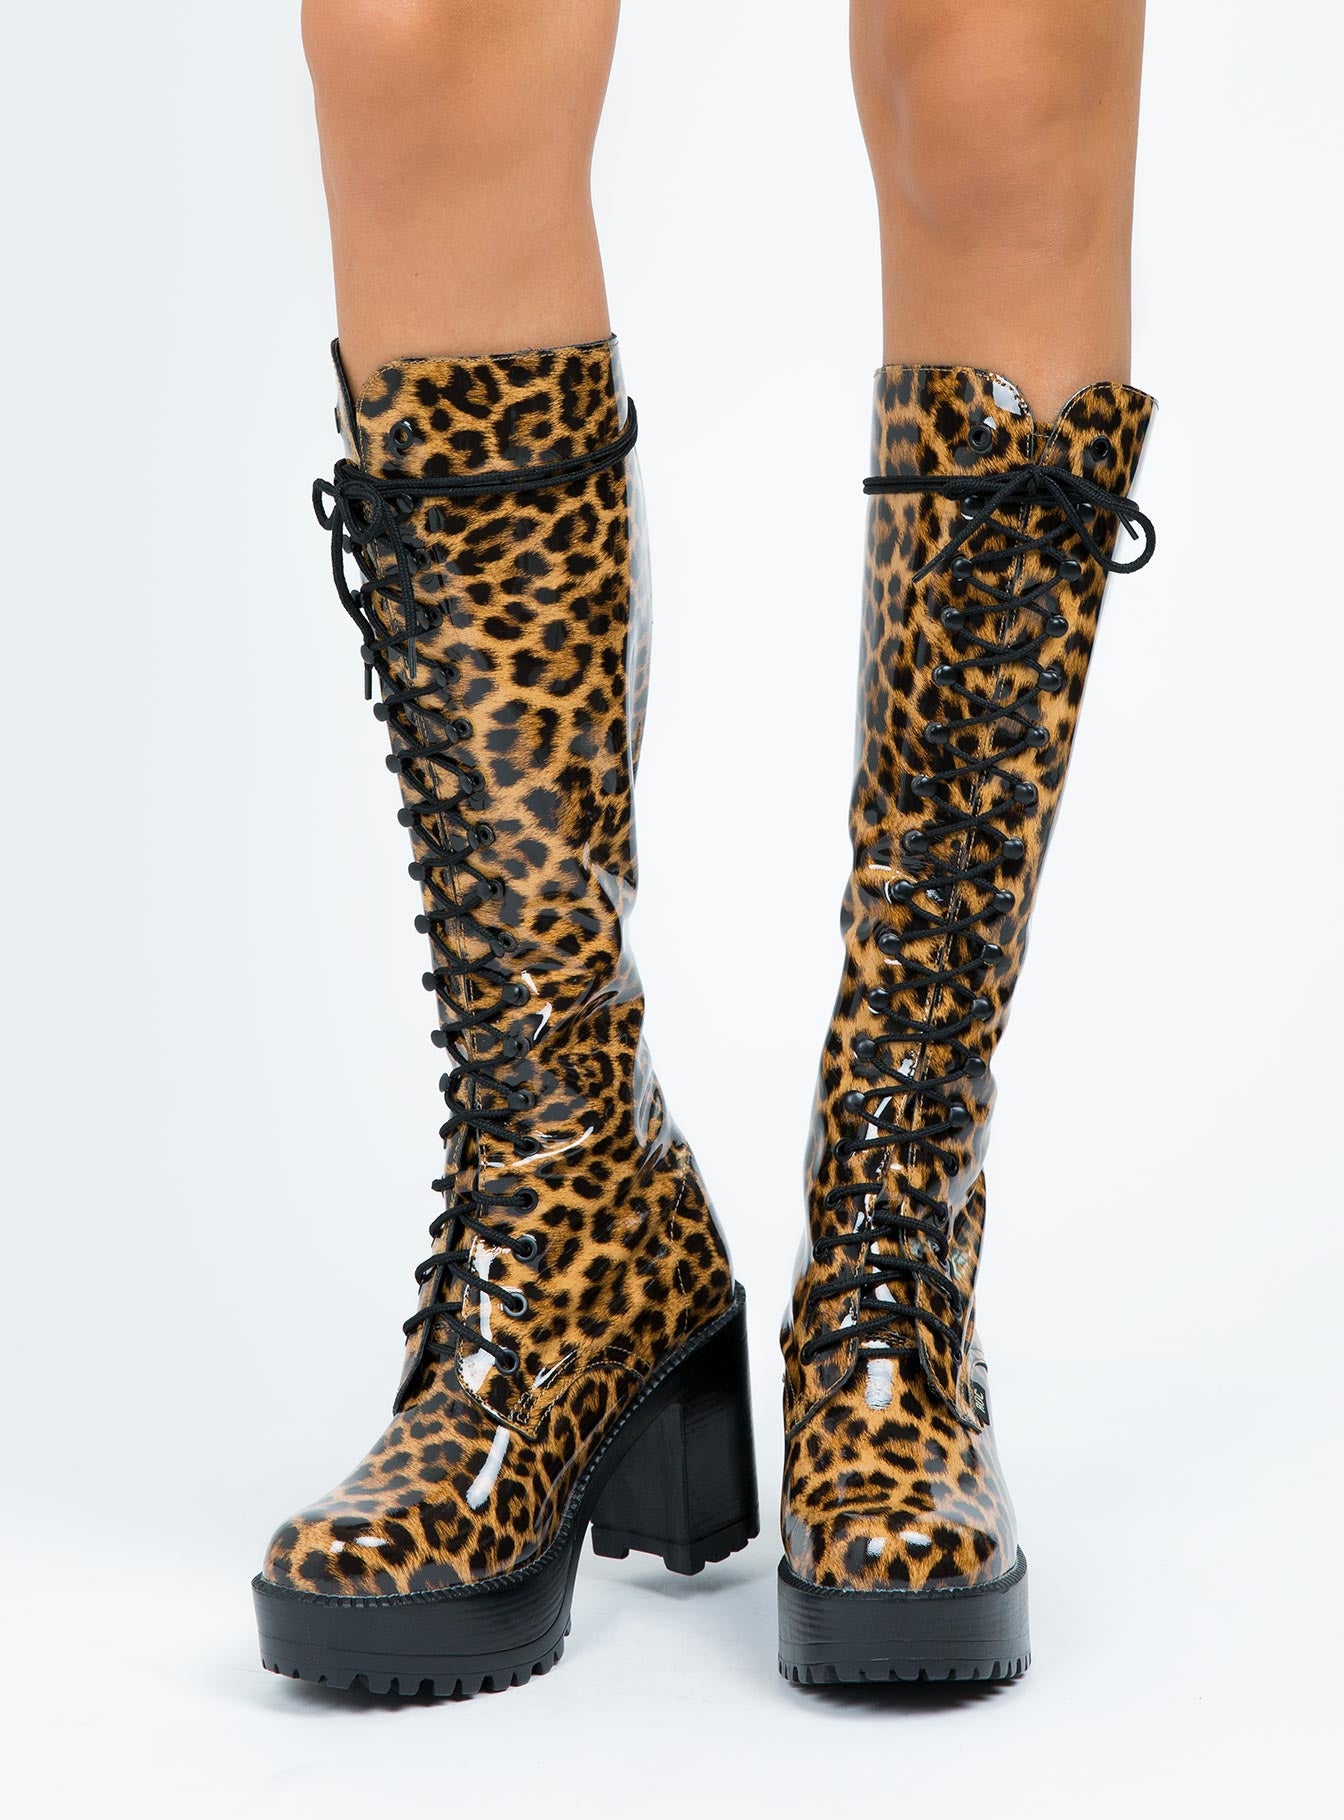 ROC Boots Australia Lash Boots Leopard